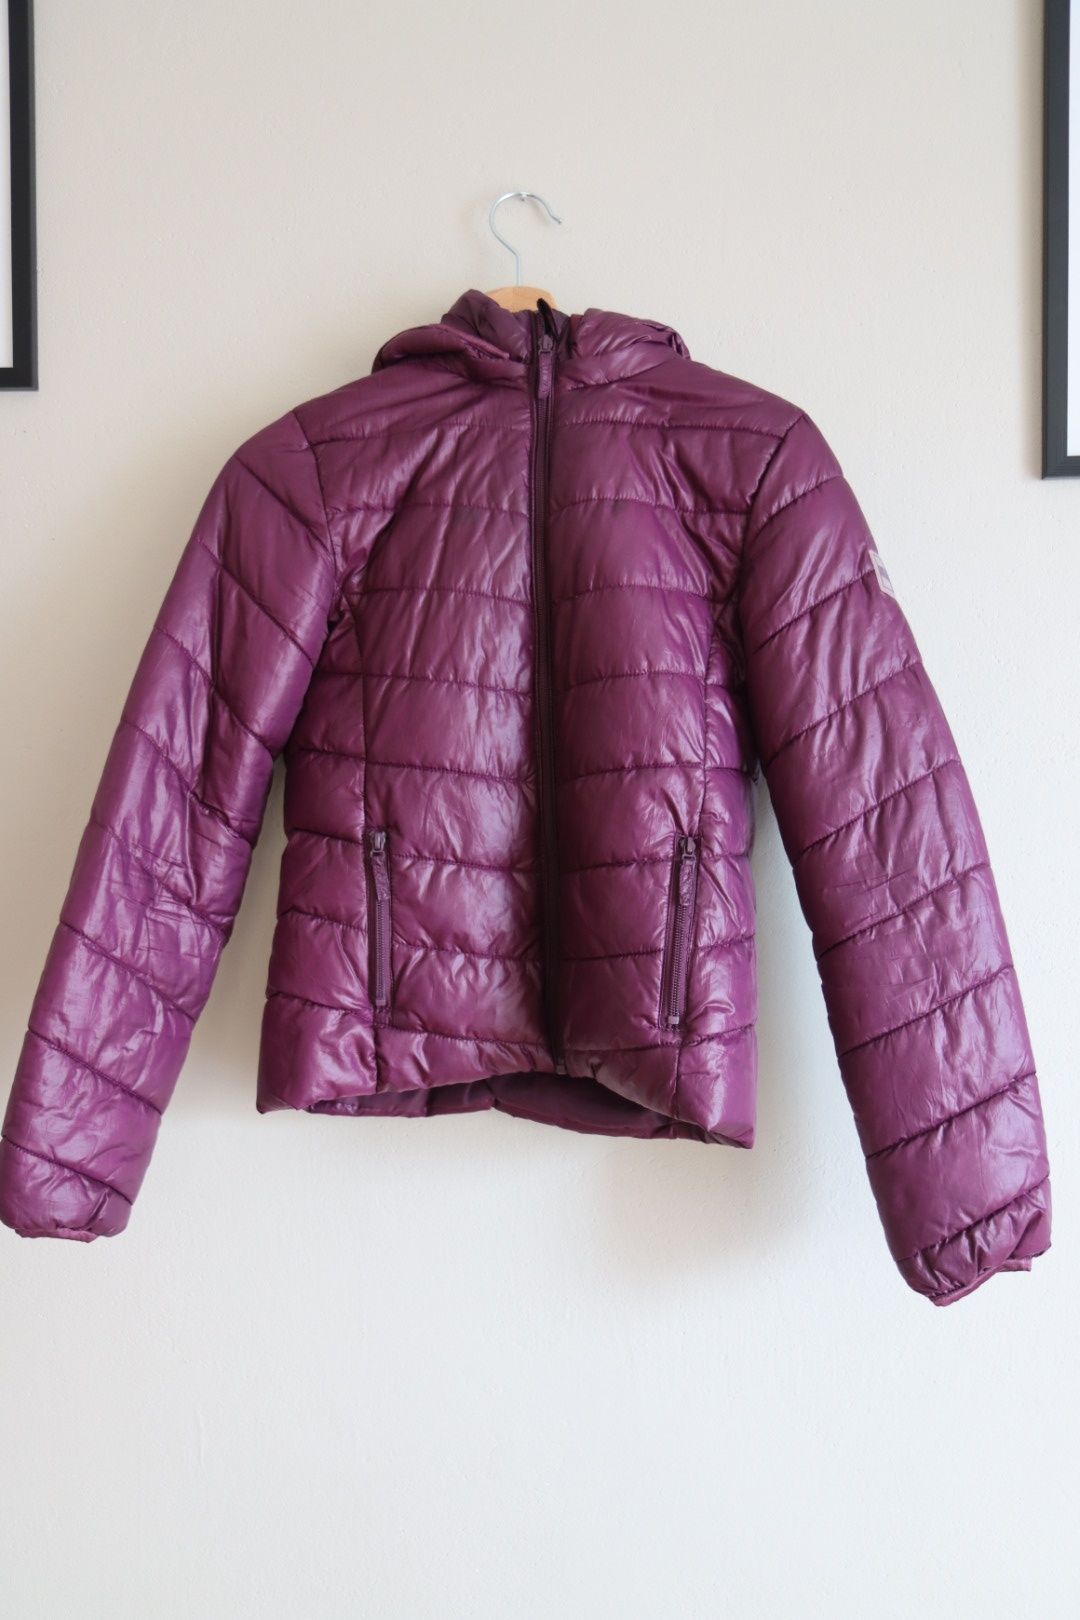 jesienna kurtka H&M pikowana fioletowa 158cm